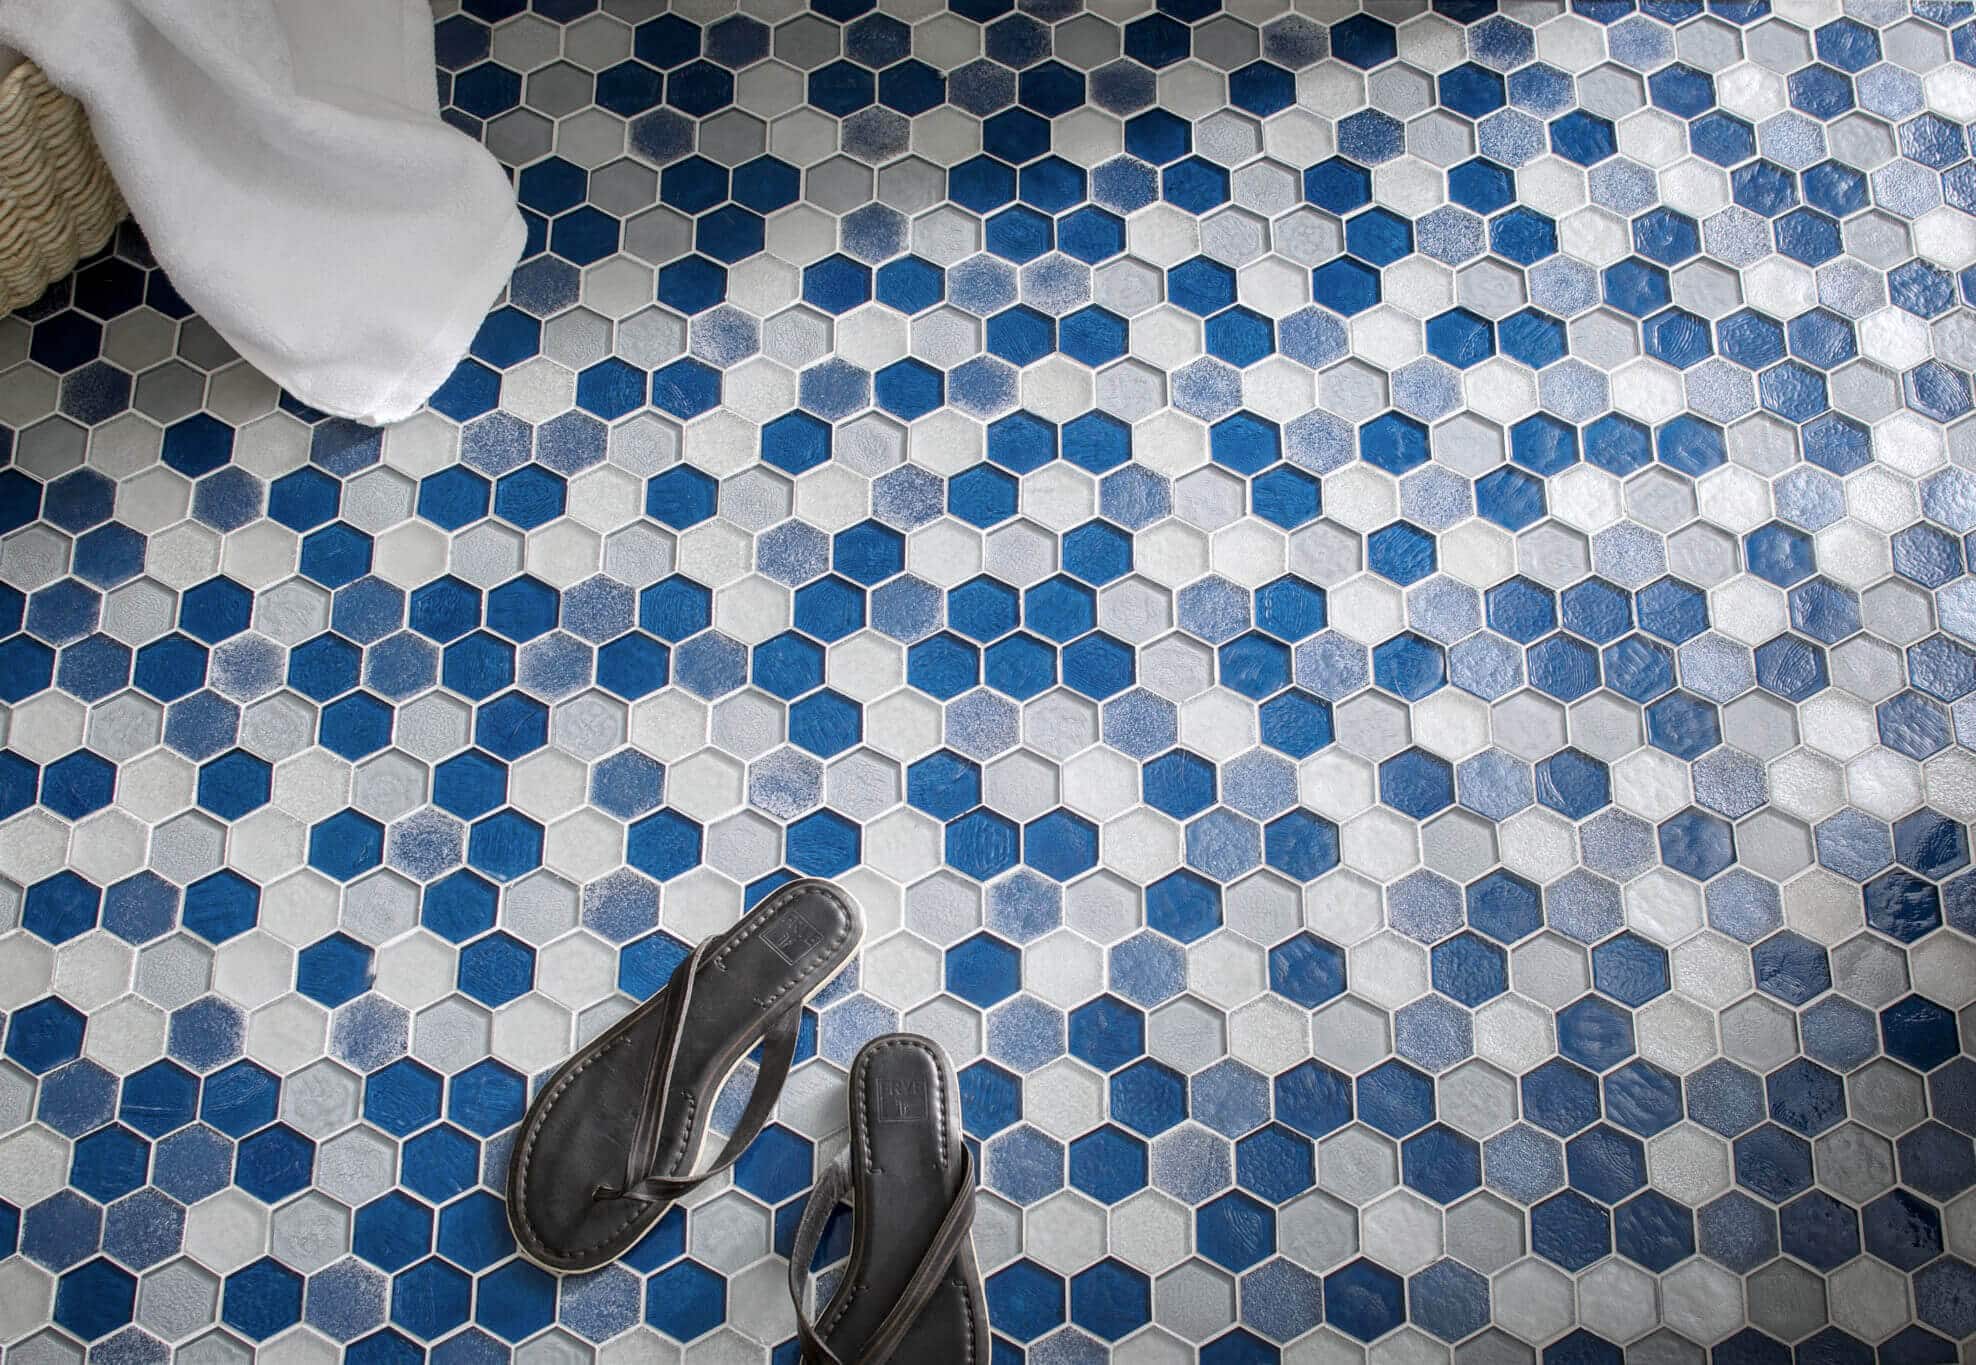 Bathroom hexagon Floor Tile Pattern